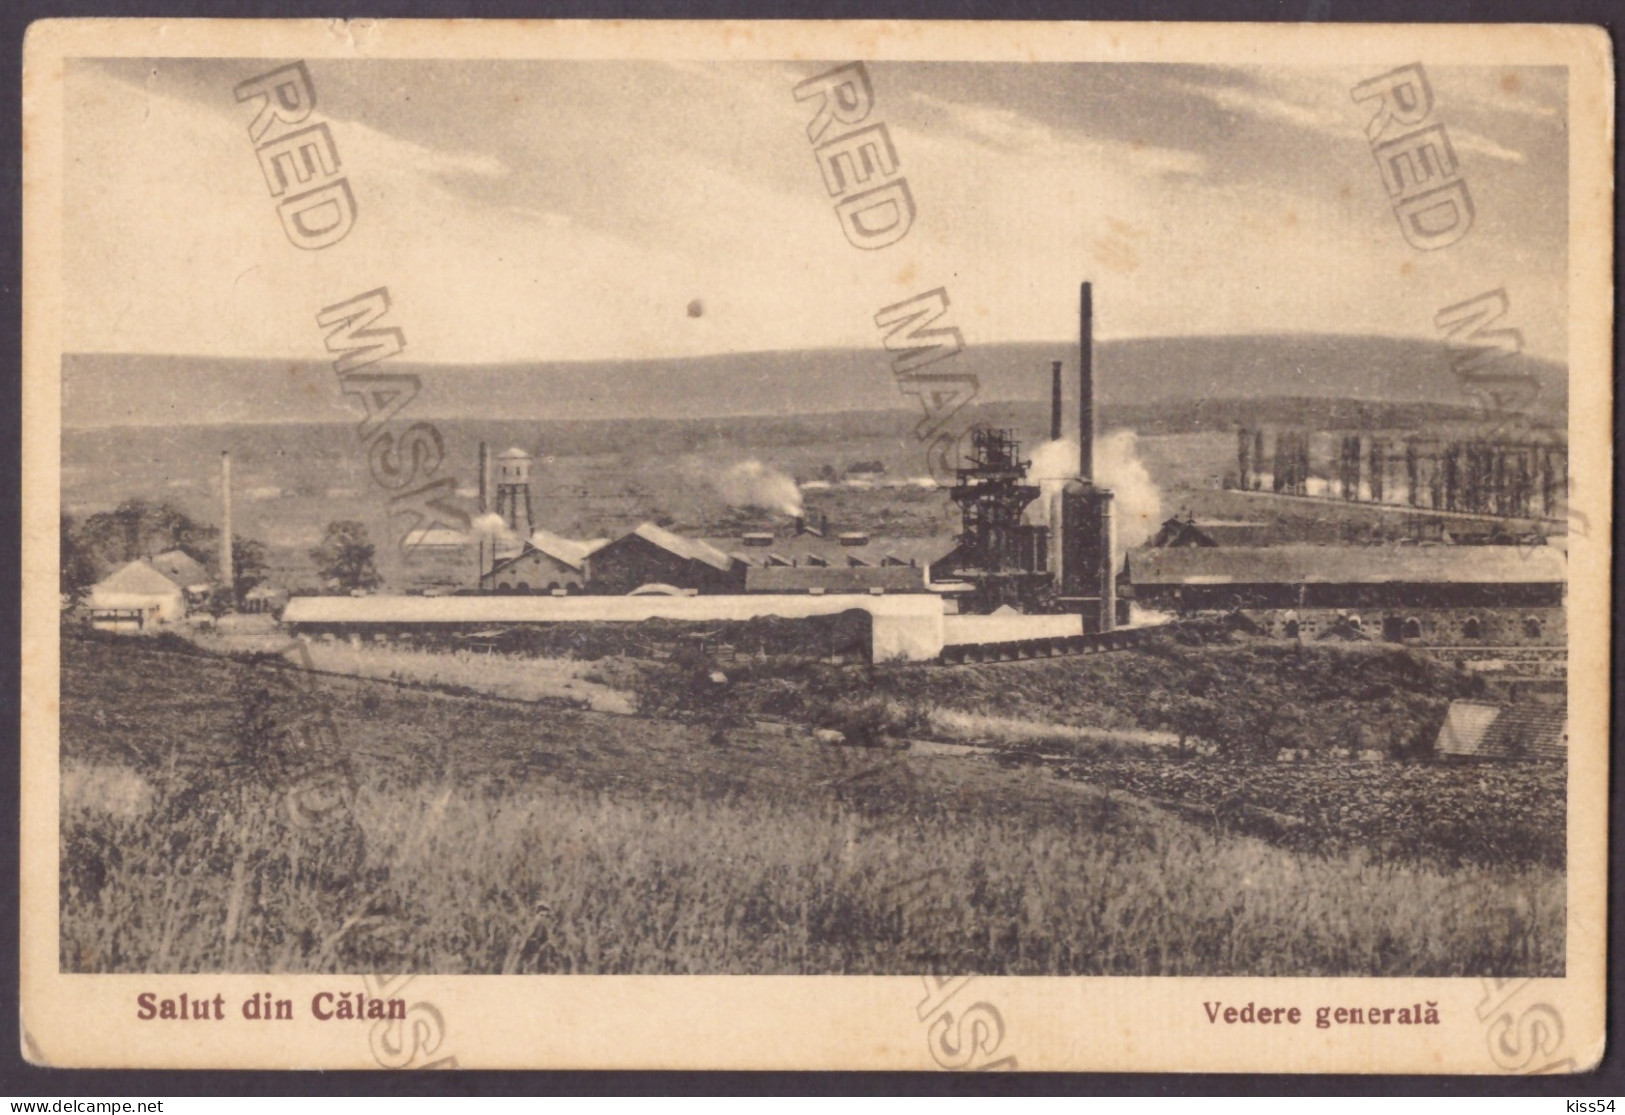 RO 40 - 25014 CALAN, Hunedoara, Panorama, Romania - Old Postcard - Unused - Roumanie